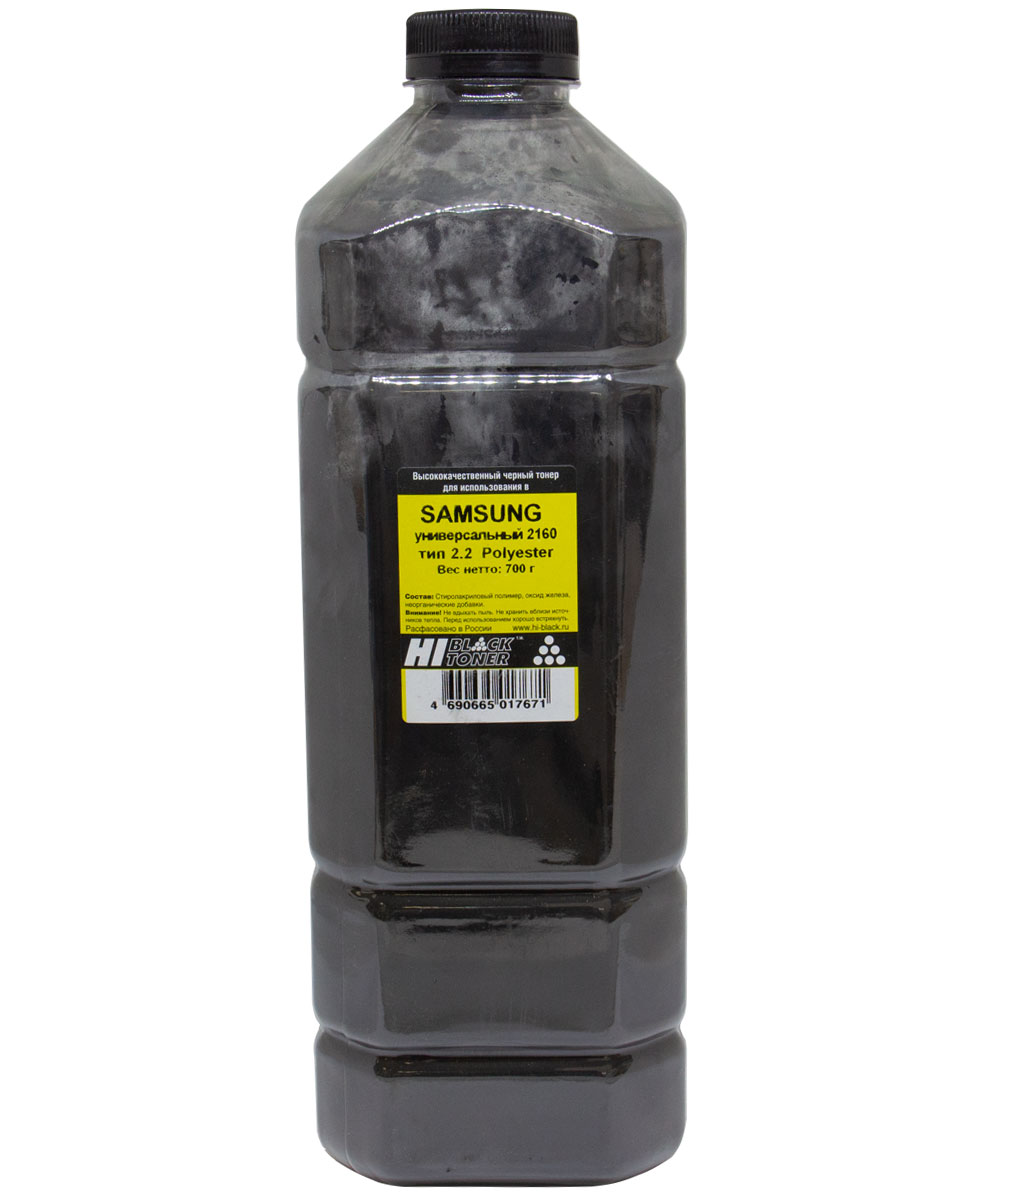 Тонер универсальный Hi-Black (MLT-D101S) для Samsung ML-2160, Polyester, Тип 2.2, чёрный (700 гр.)